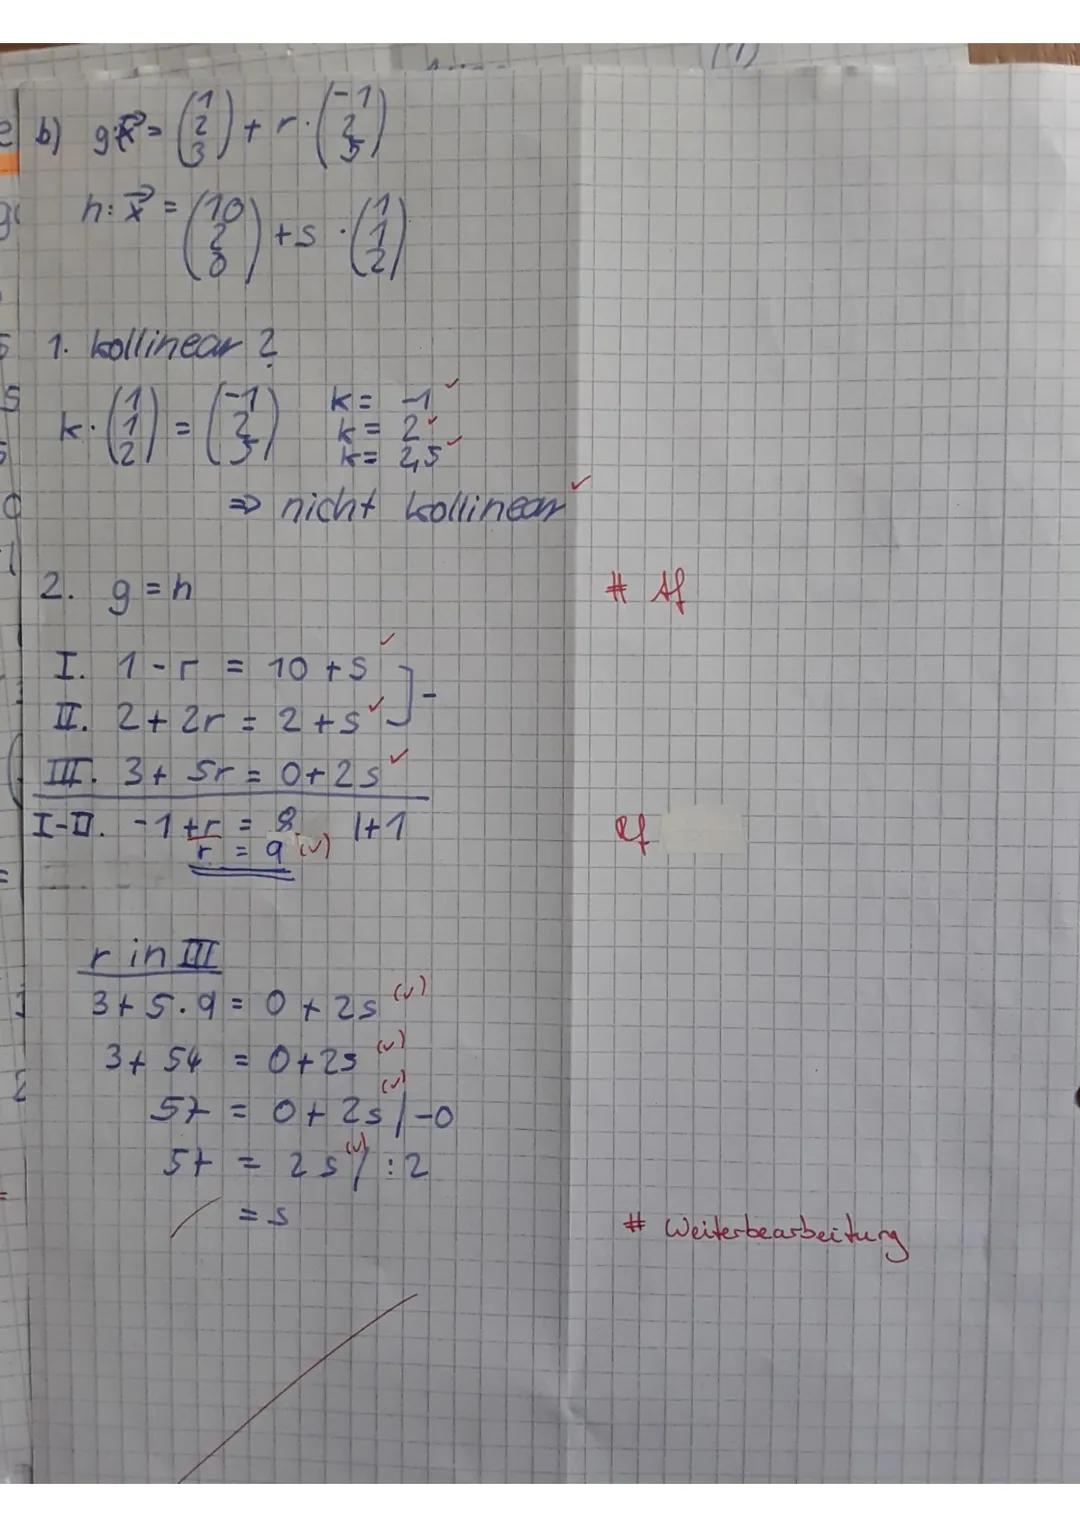 Q1 Mathematik GK-4. Klausur
Name:
Aufgabe 2 (Vektoren darstellen)
Gegeben
sind
die
Punkte
ř= AB, S = CD, t = BE und u = CA.
Teil I: Hilfsmit